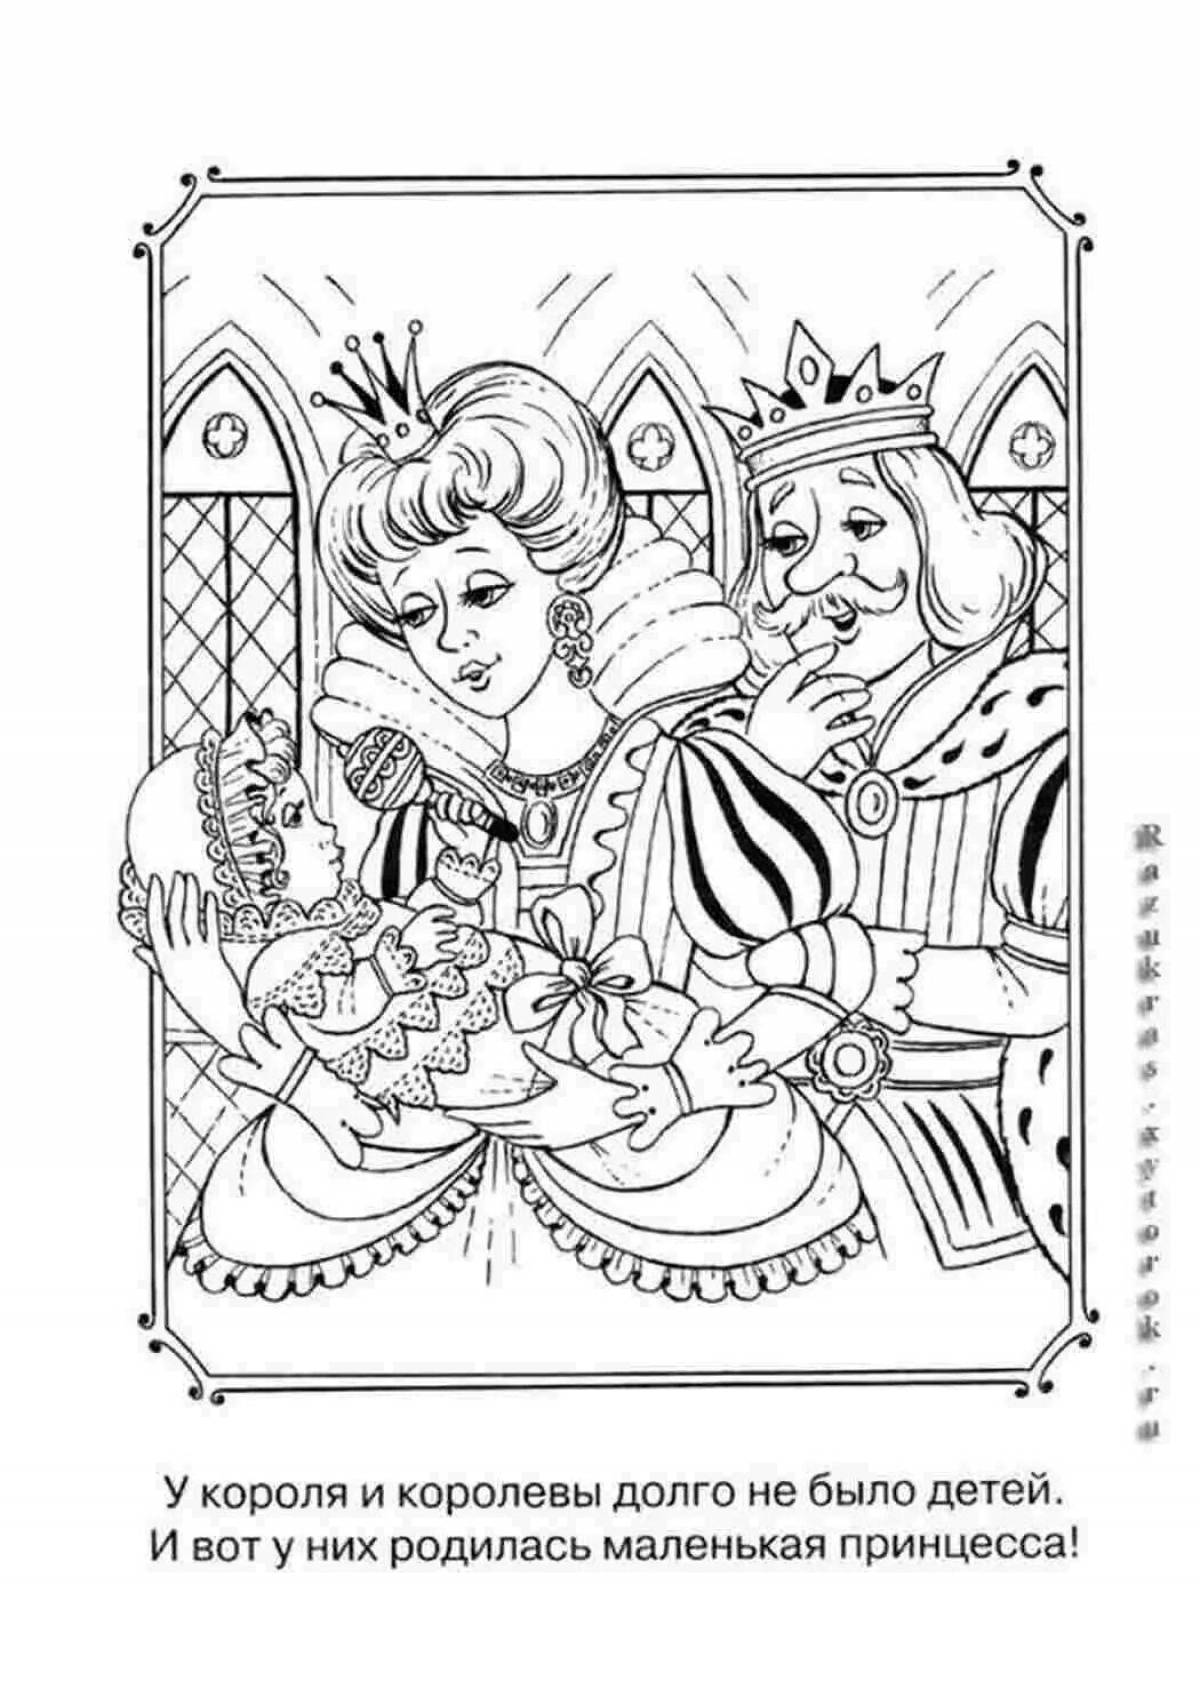 Гламурная раскраска принцесса и король